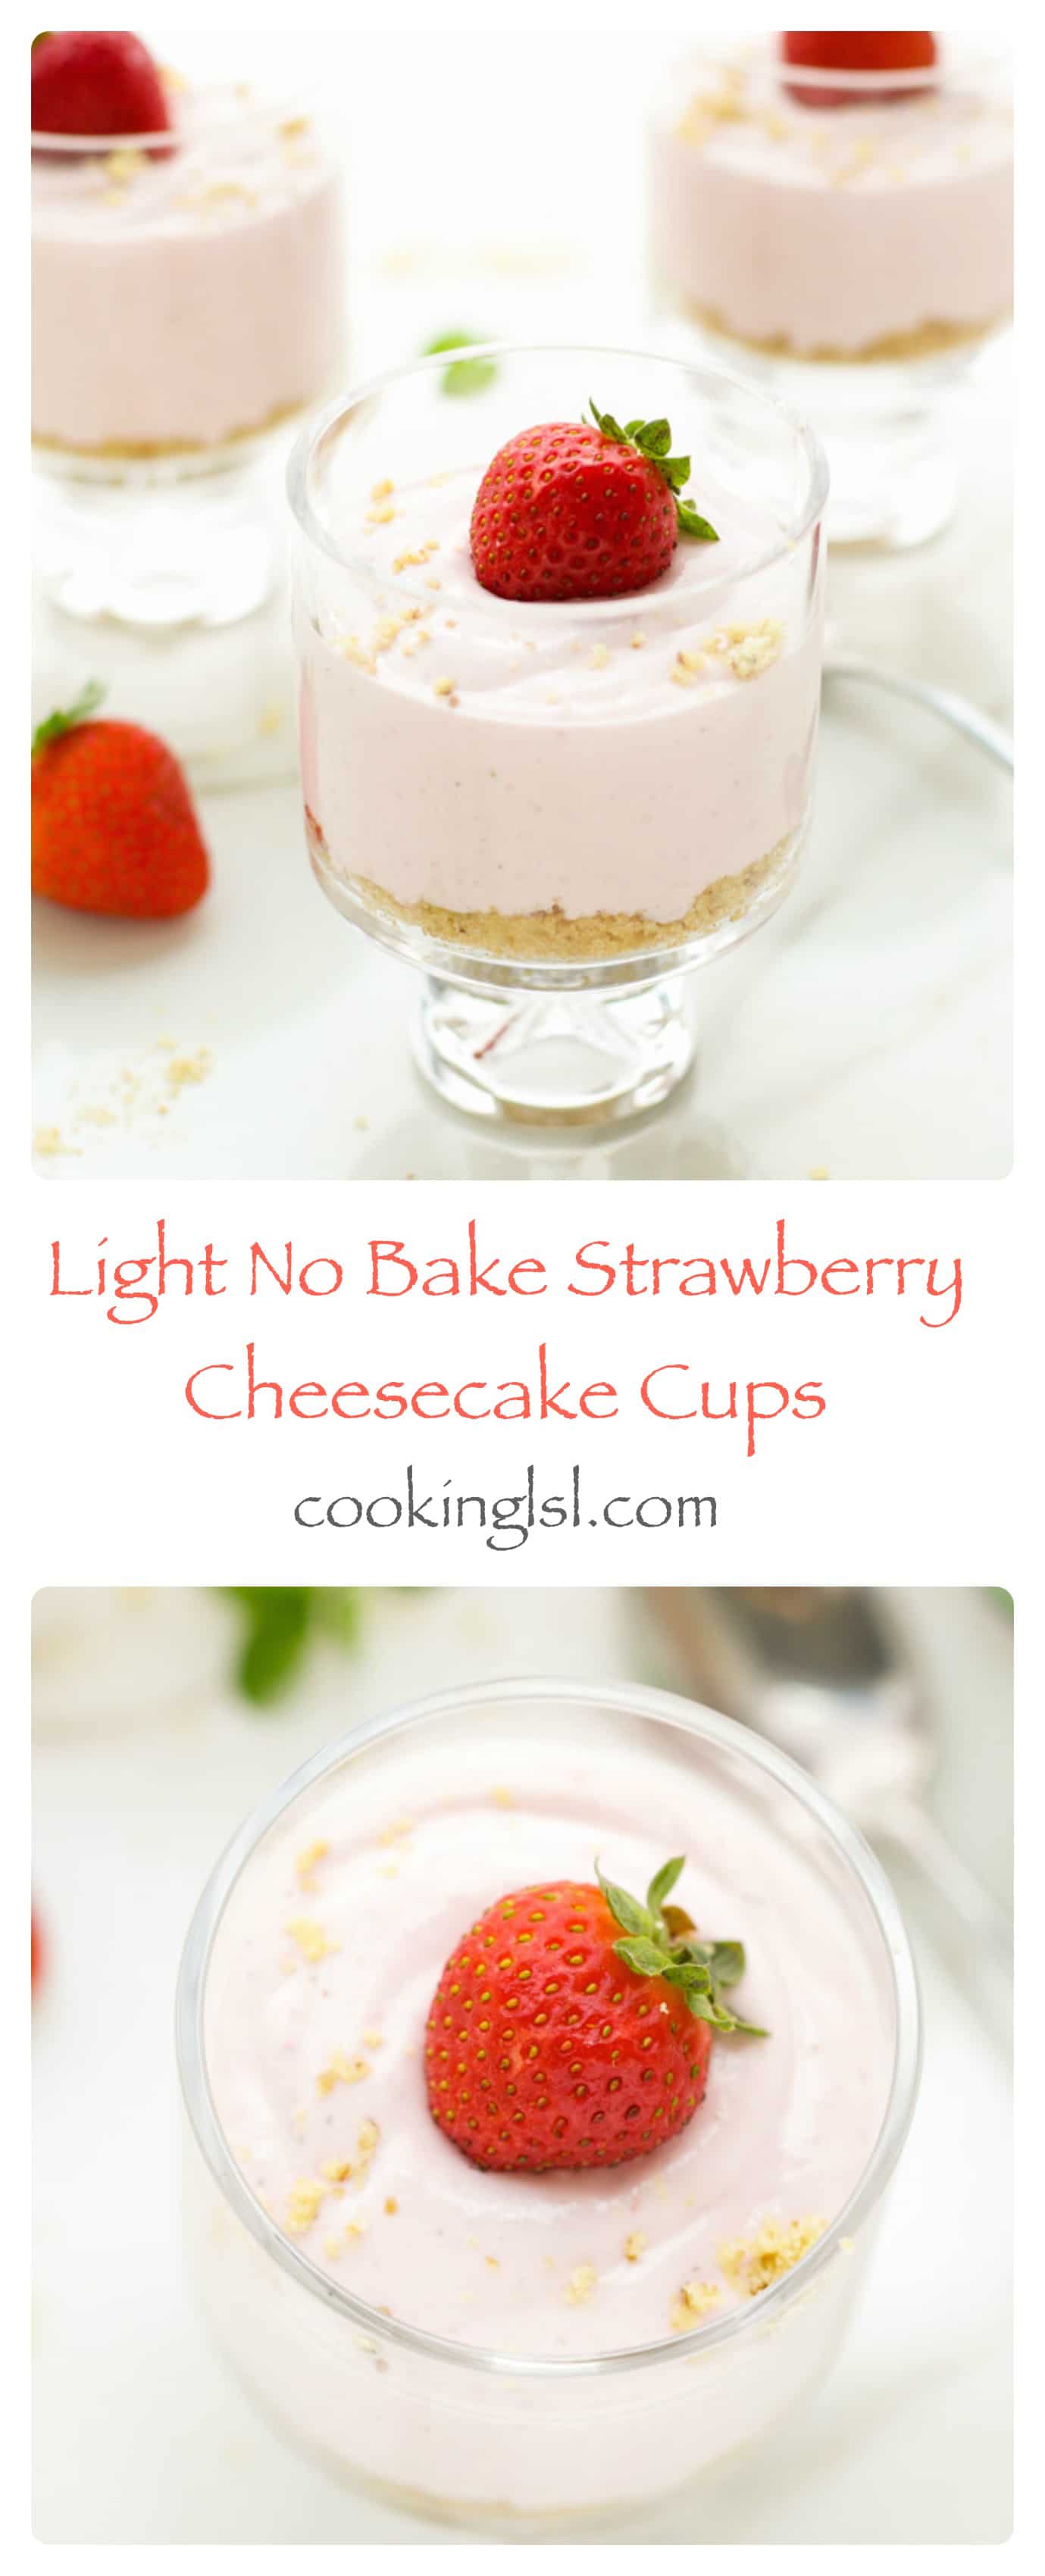 light-no-bake-strawberry-cheesecake-cups-no sugar-stevia